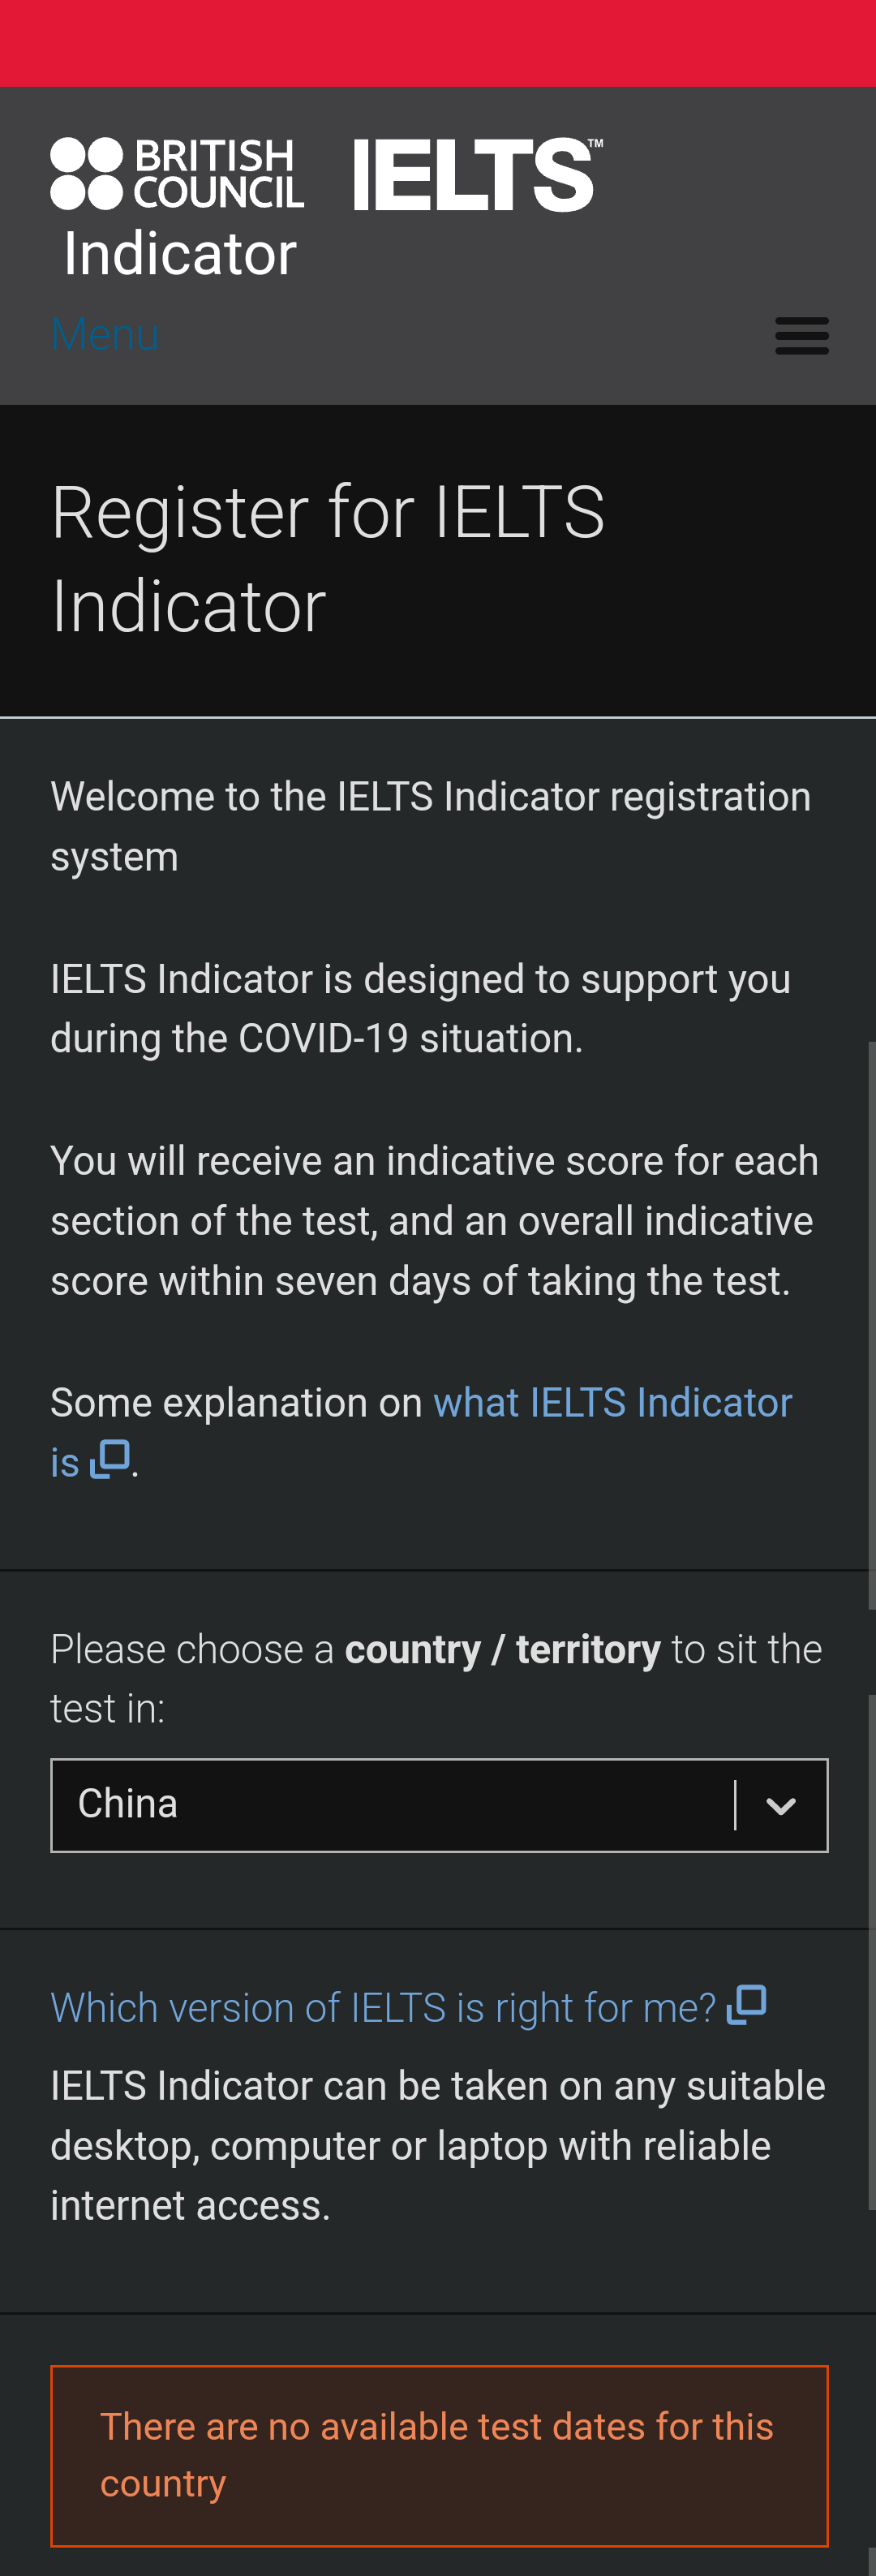 好消息！雅思官方终于在中国大陆区开放了IELTS Indicator ！